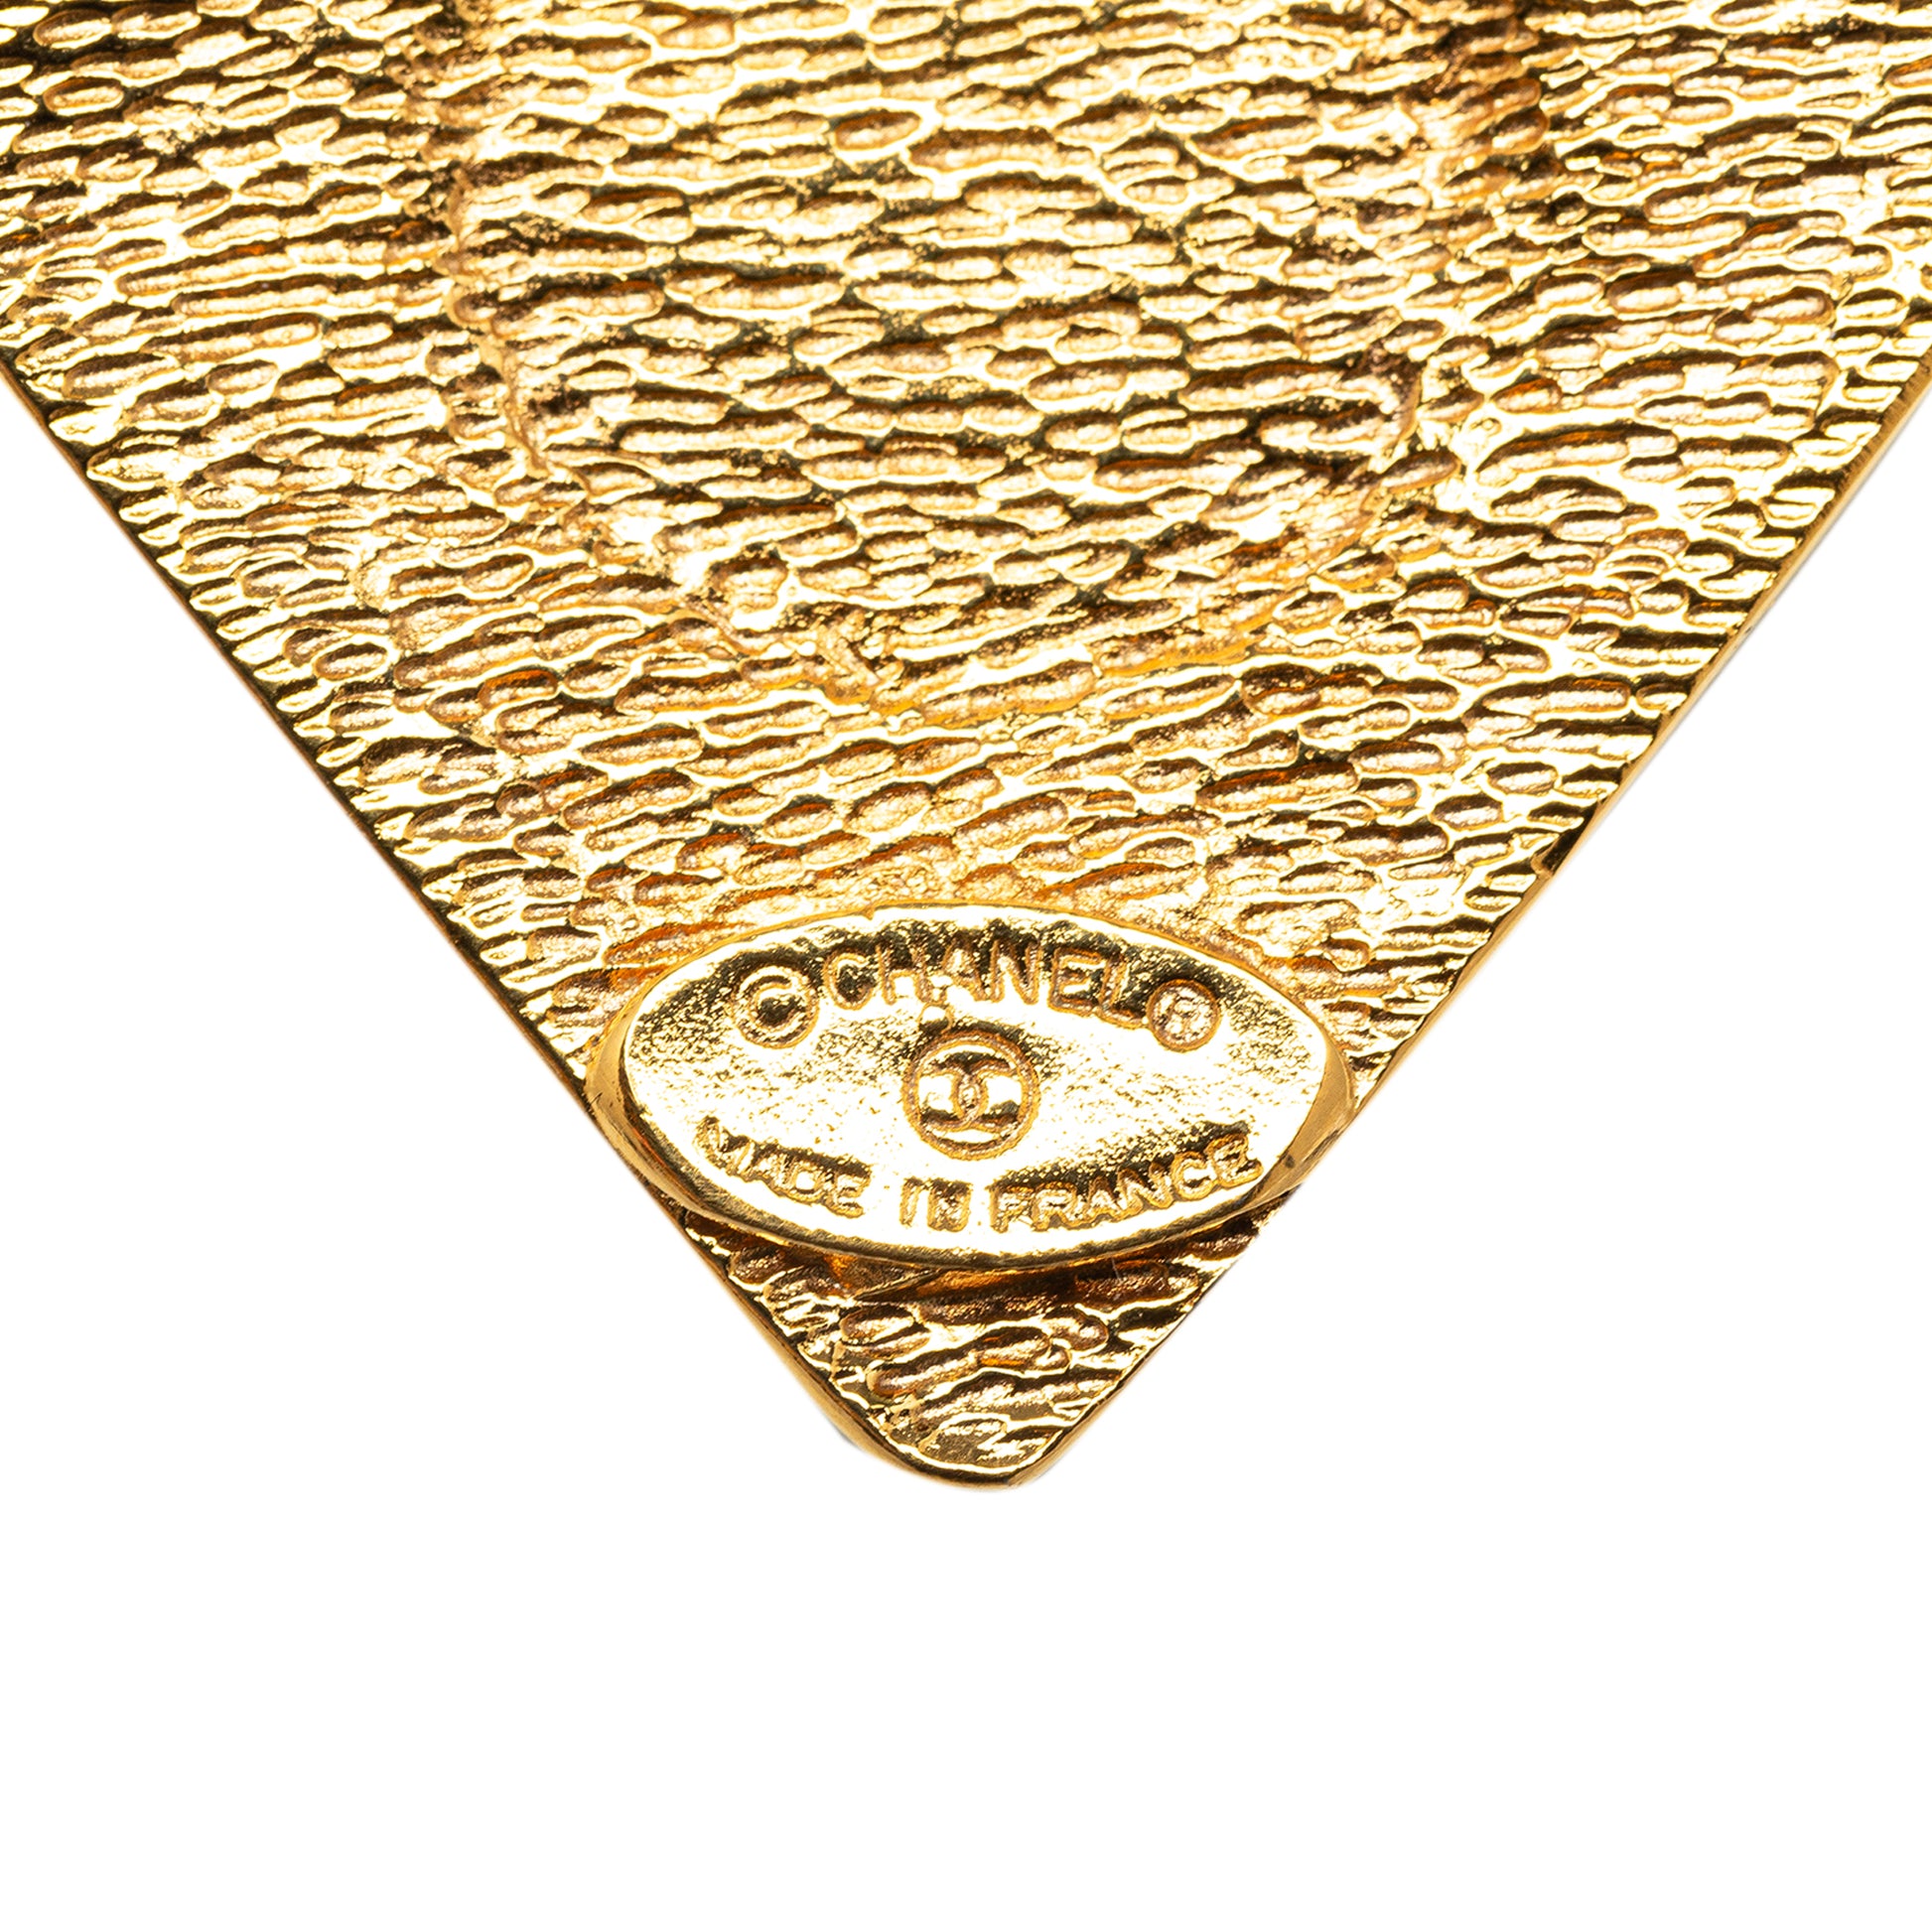 CC Pendant Necklace Gold - Gaby Paris